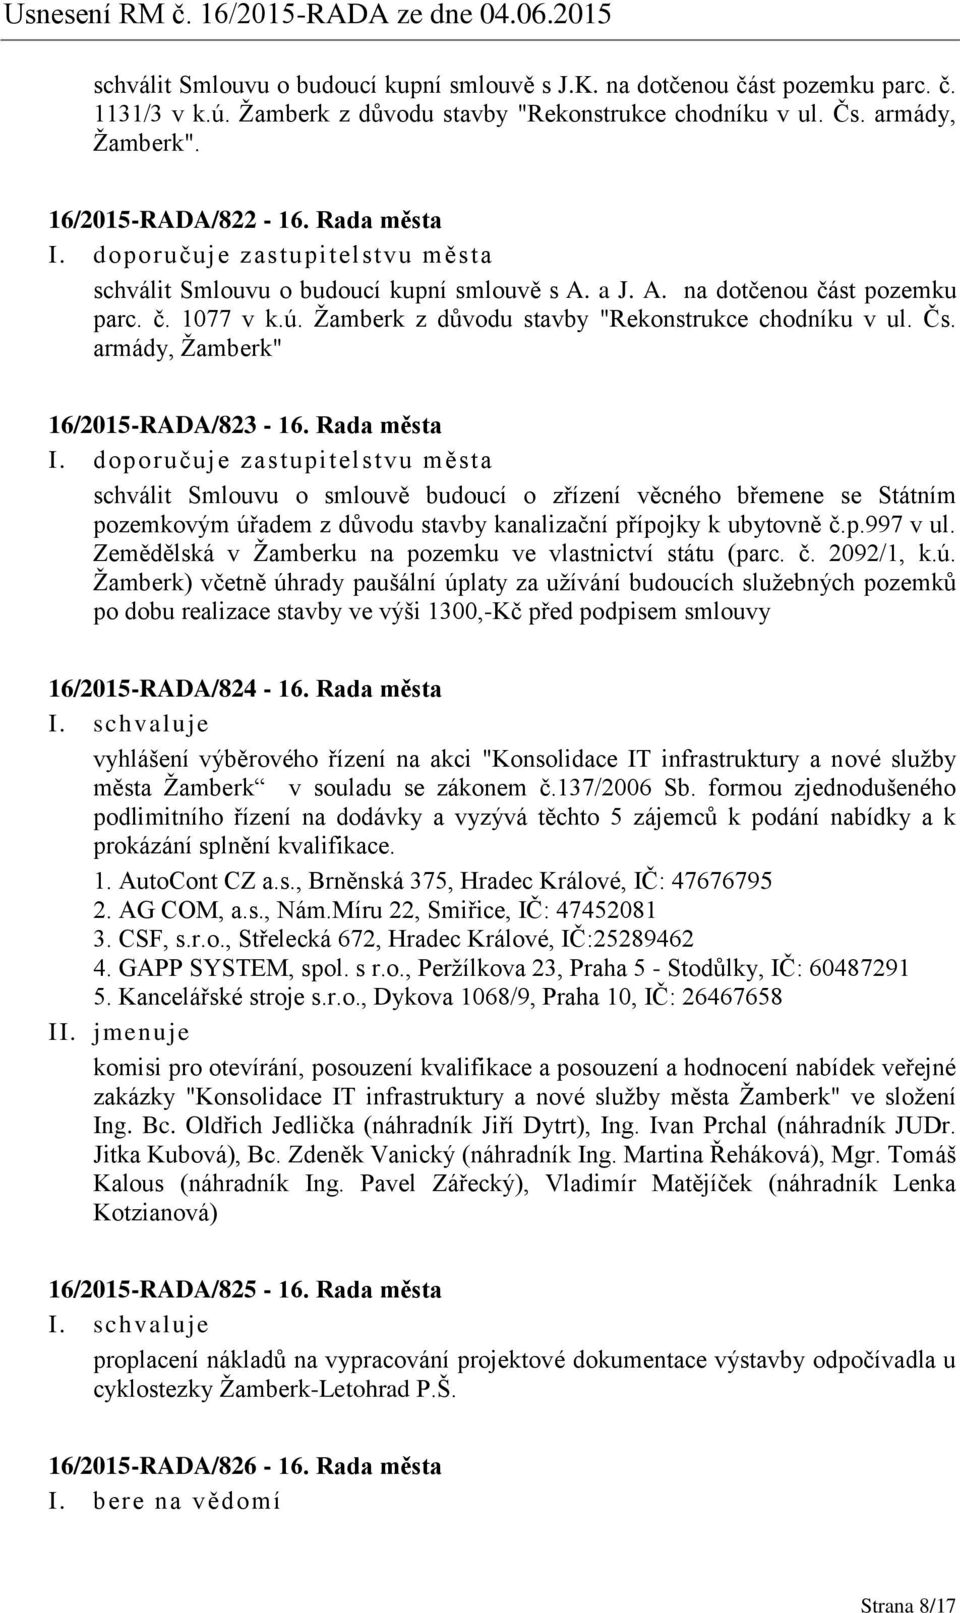 armády, Žamberk" 16/2015-RADA/823-16. Rada města schválit Smlouvu o smlouvě budoucí o zřízení věcného břemene se Státním pozemkovým úřadem z důvodu stavby kanalizační přípojky k ubytovně č.p.997 v ul.